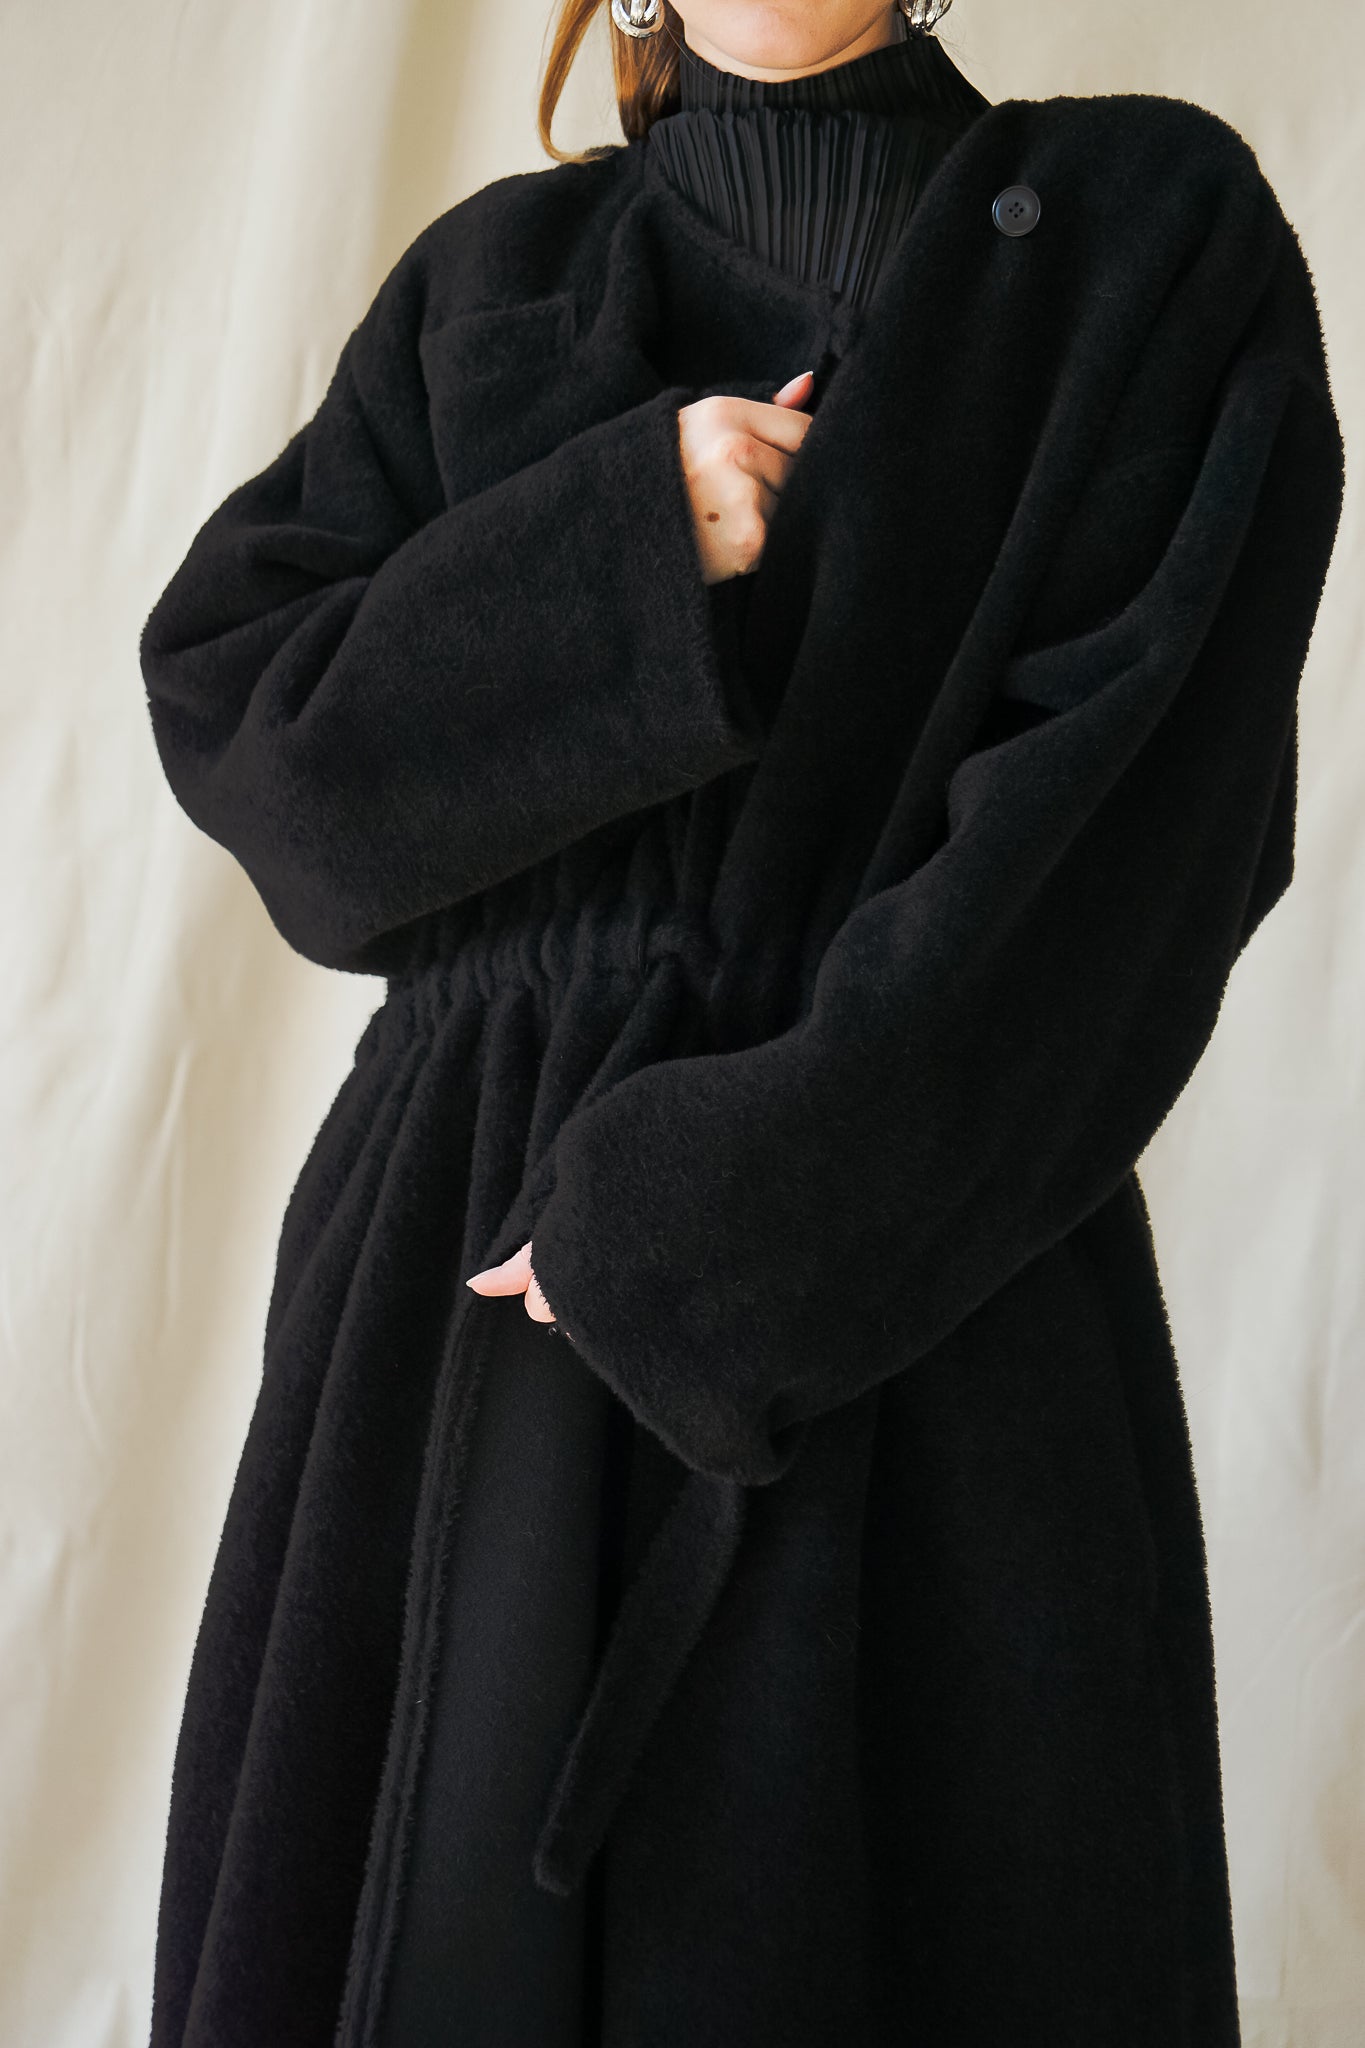 Recess Vintage LA Girl in black Issey Miyake top & Sonia Rykiel coat